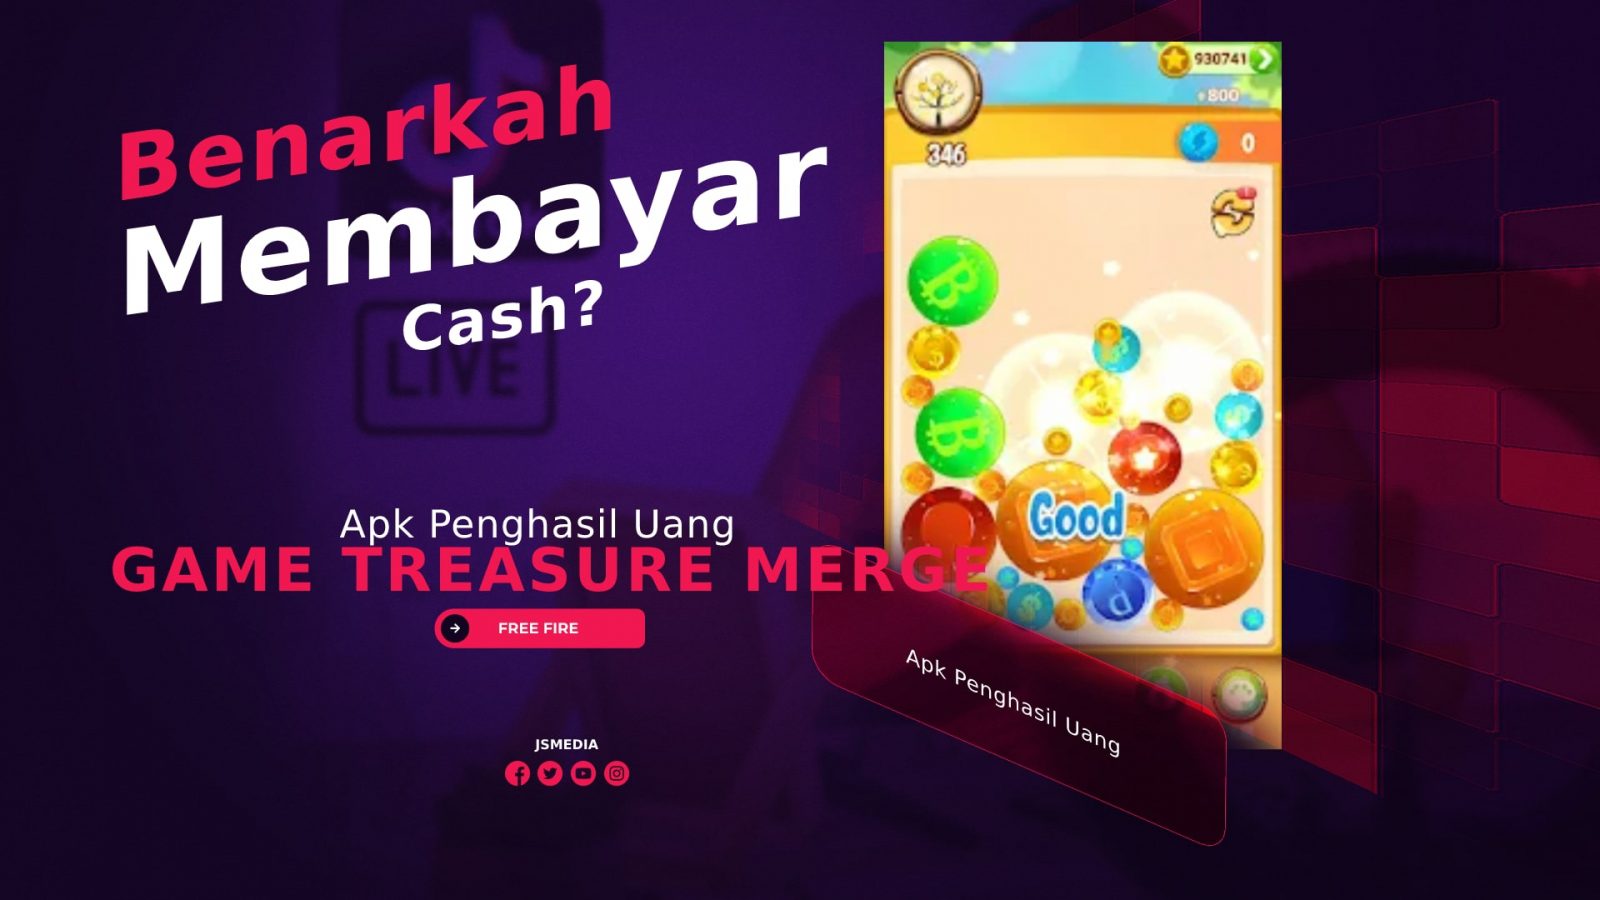 Game Treasure Merge Apk Penghasil Uang, Benarkah Membayar Cash?